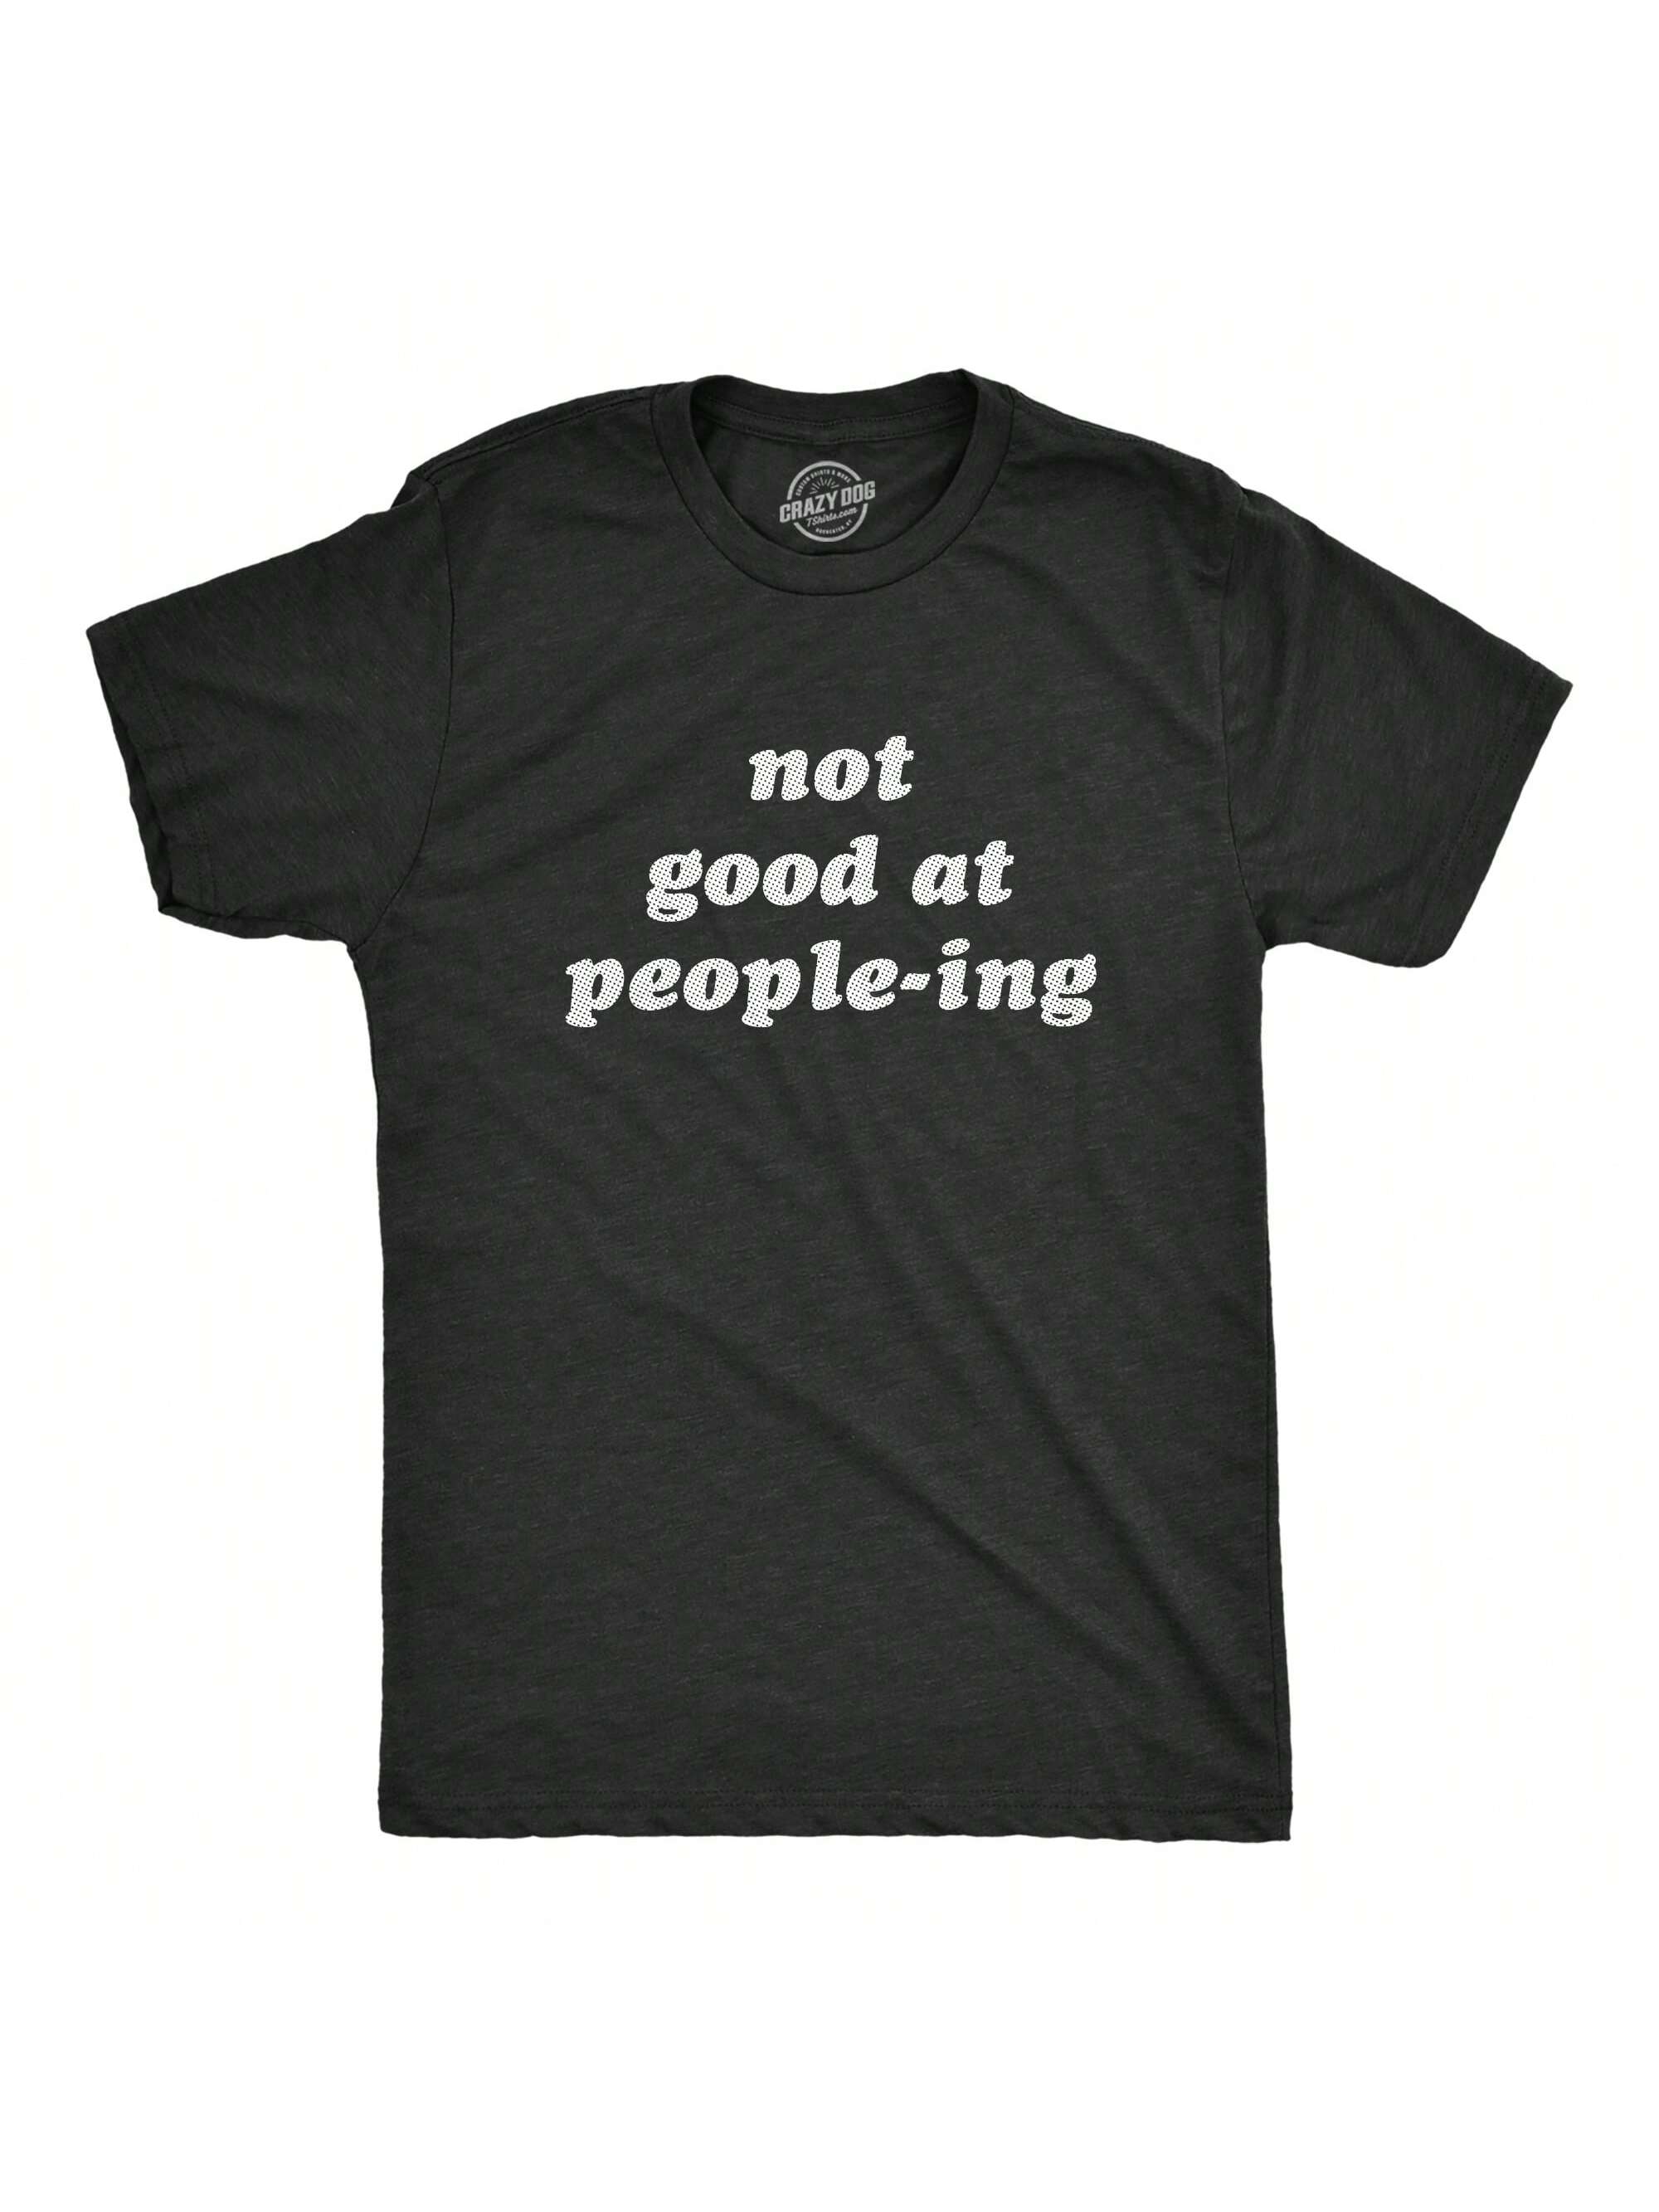 Мужская футболка «Не хорошо умеет населять людей» Забавная футболка «Интроверт-интроверт» для парней (Хезер Блэк — PEOPLEING) — S, хизер блэк - люди